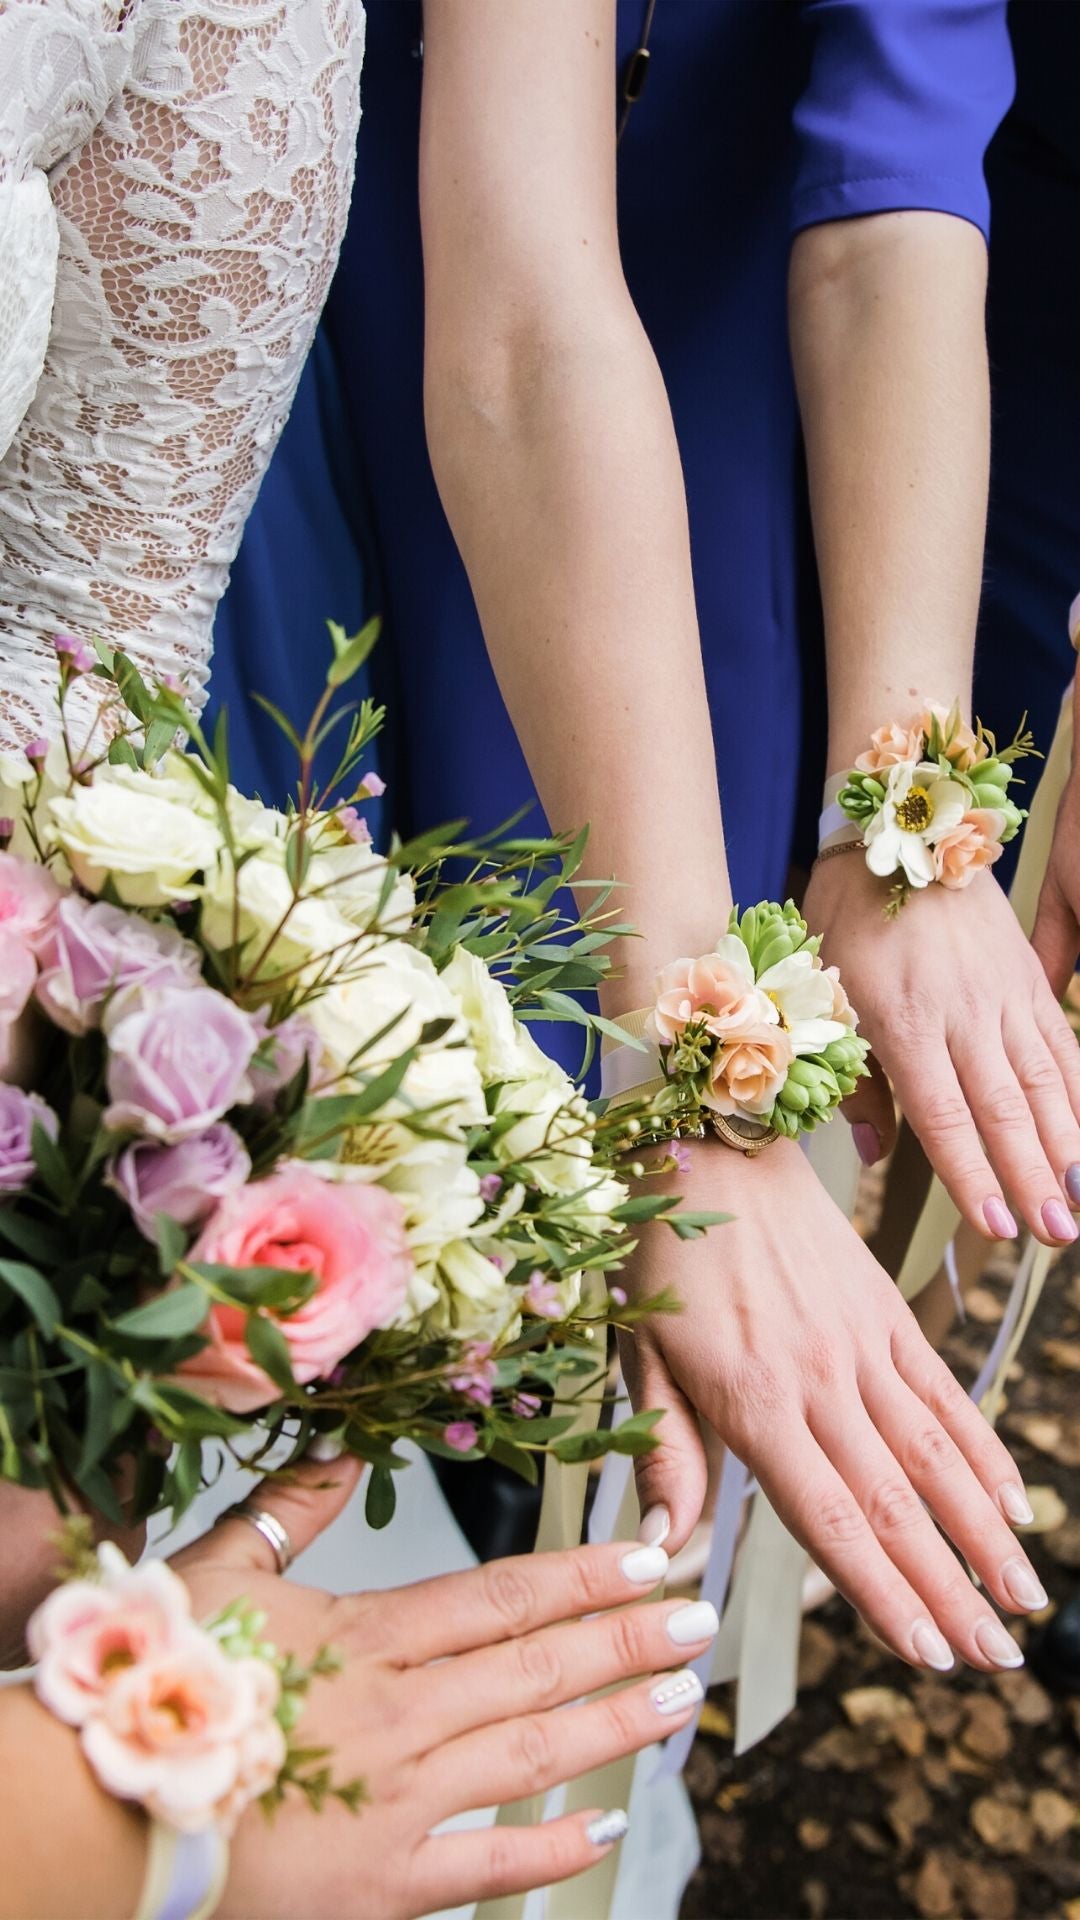 Florale Armbänder an den Handgelenken der Brautjungfern.